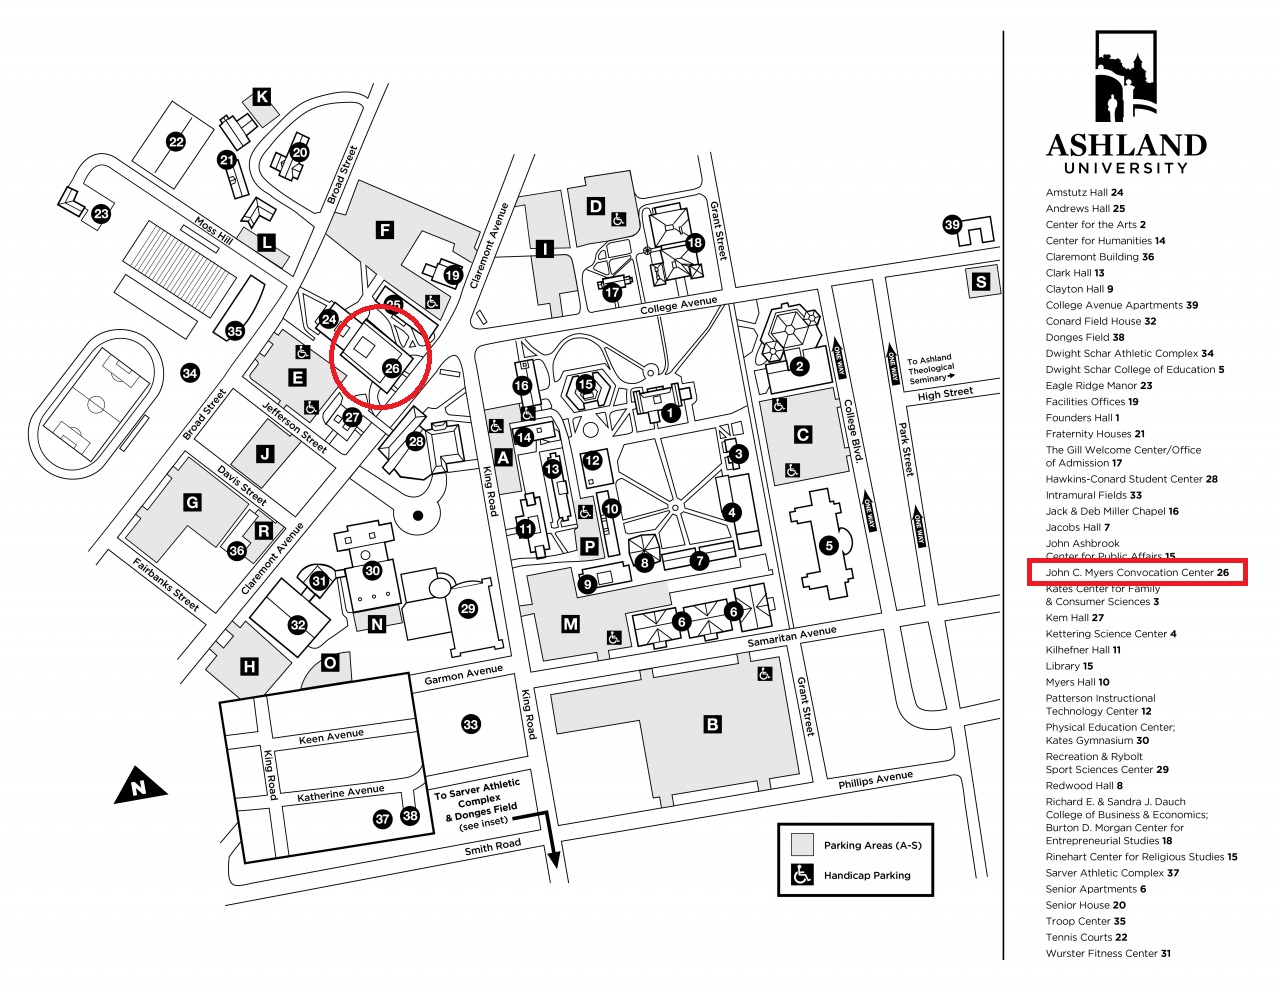 Ashland University Campus Map - Allyce Maitilde